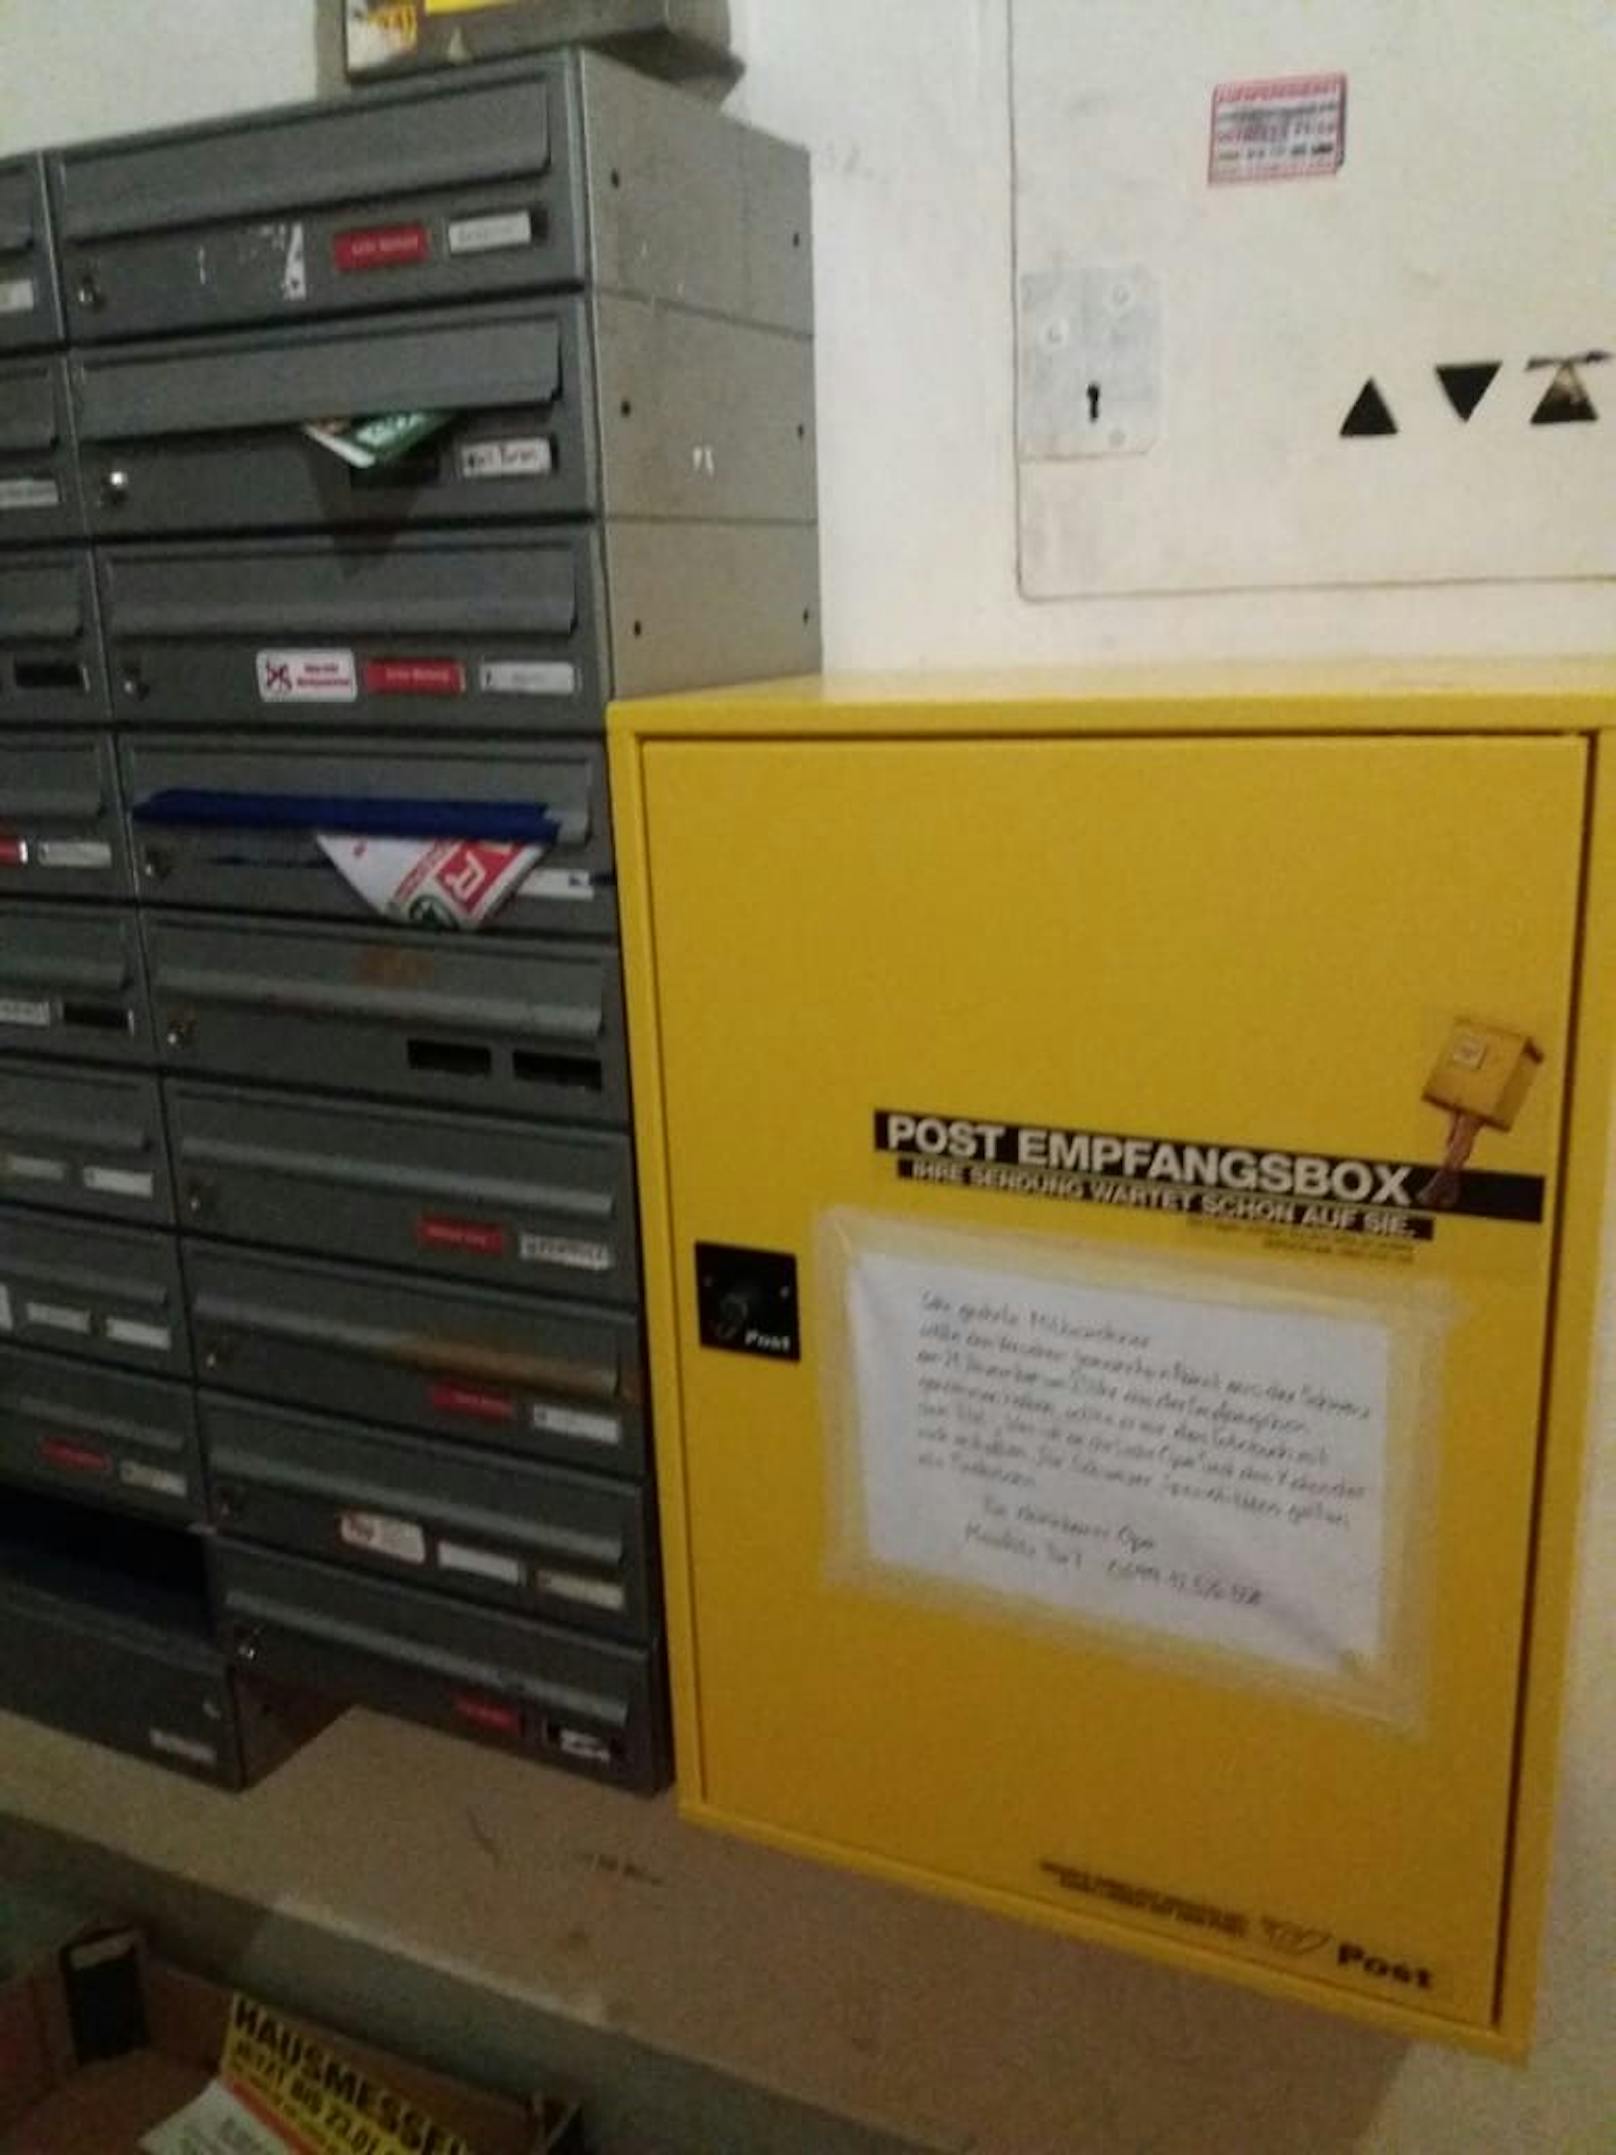 Die Original-Empfangsbox (daneben die Briefkästchen)